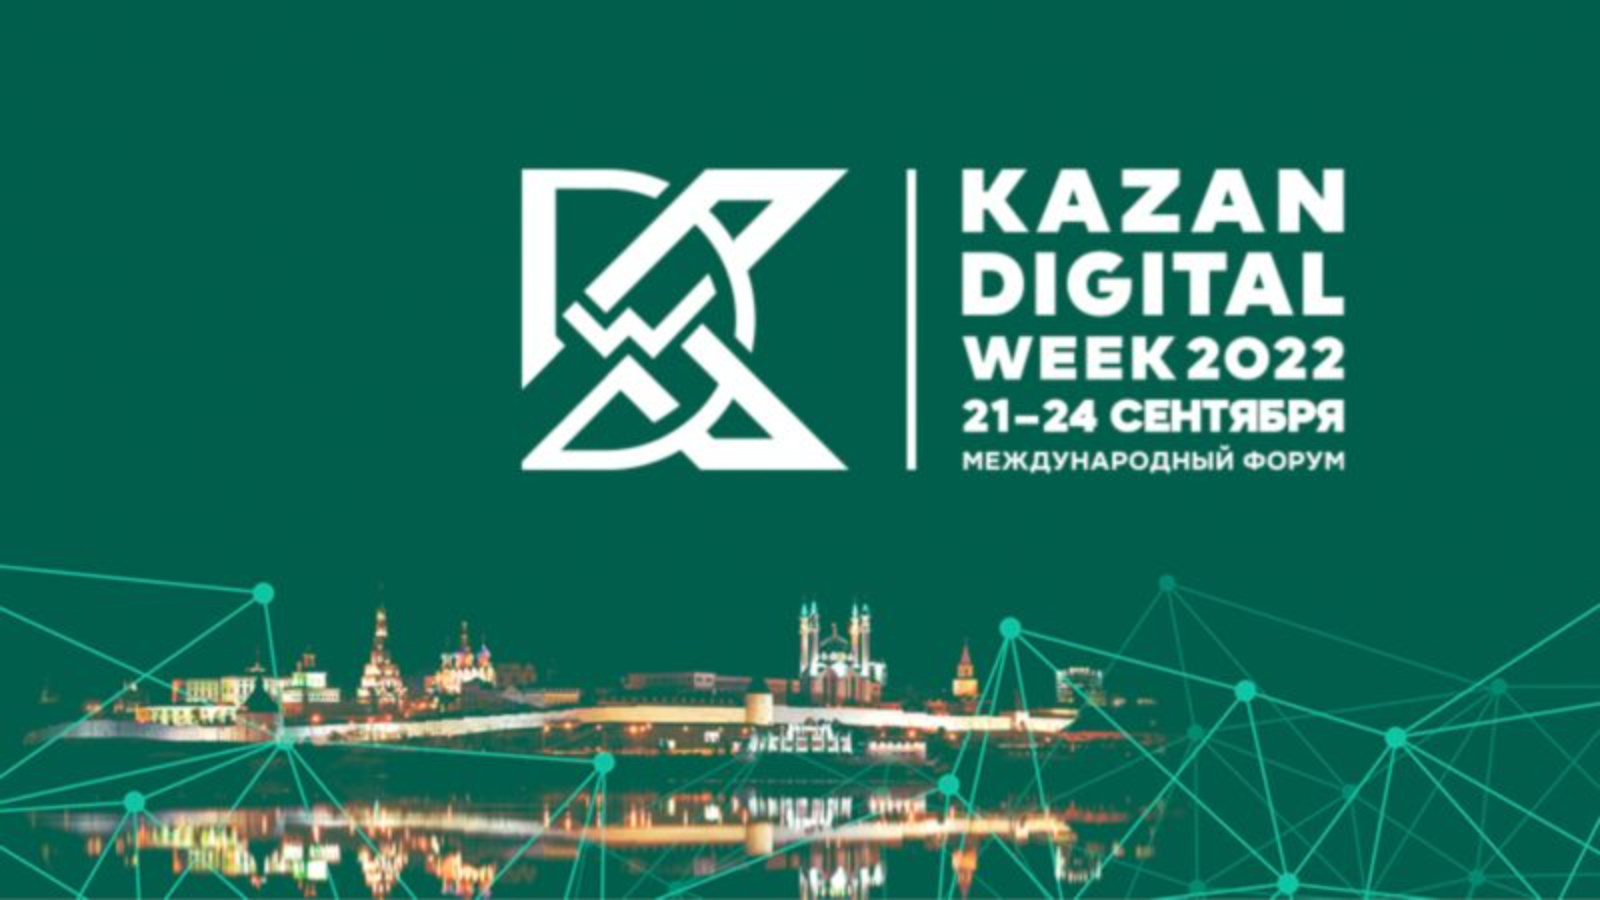 Форум казань 2023. Kazan Digital 2022. Казань диджитал Вик 2022. Международный форум Kazan Digital week 2022. Казань диджитал уик 2022.